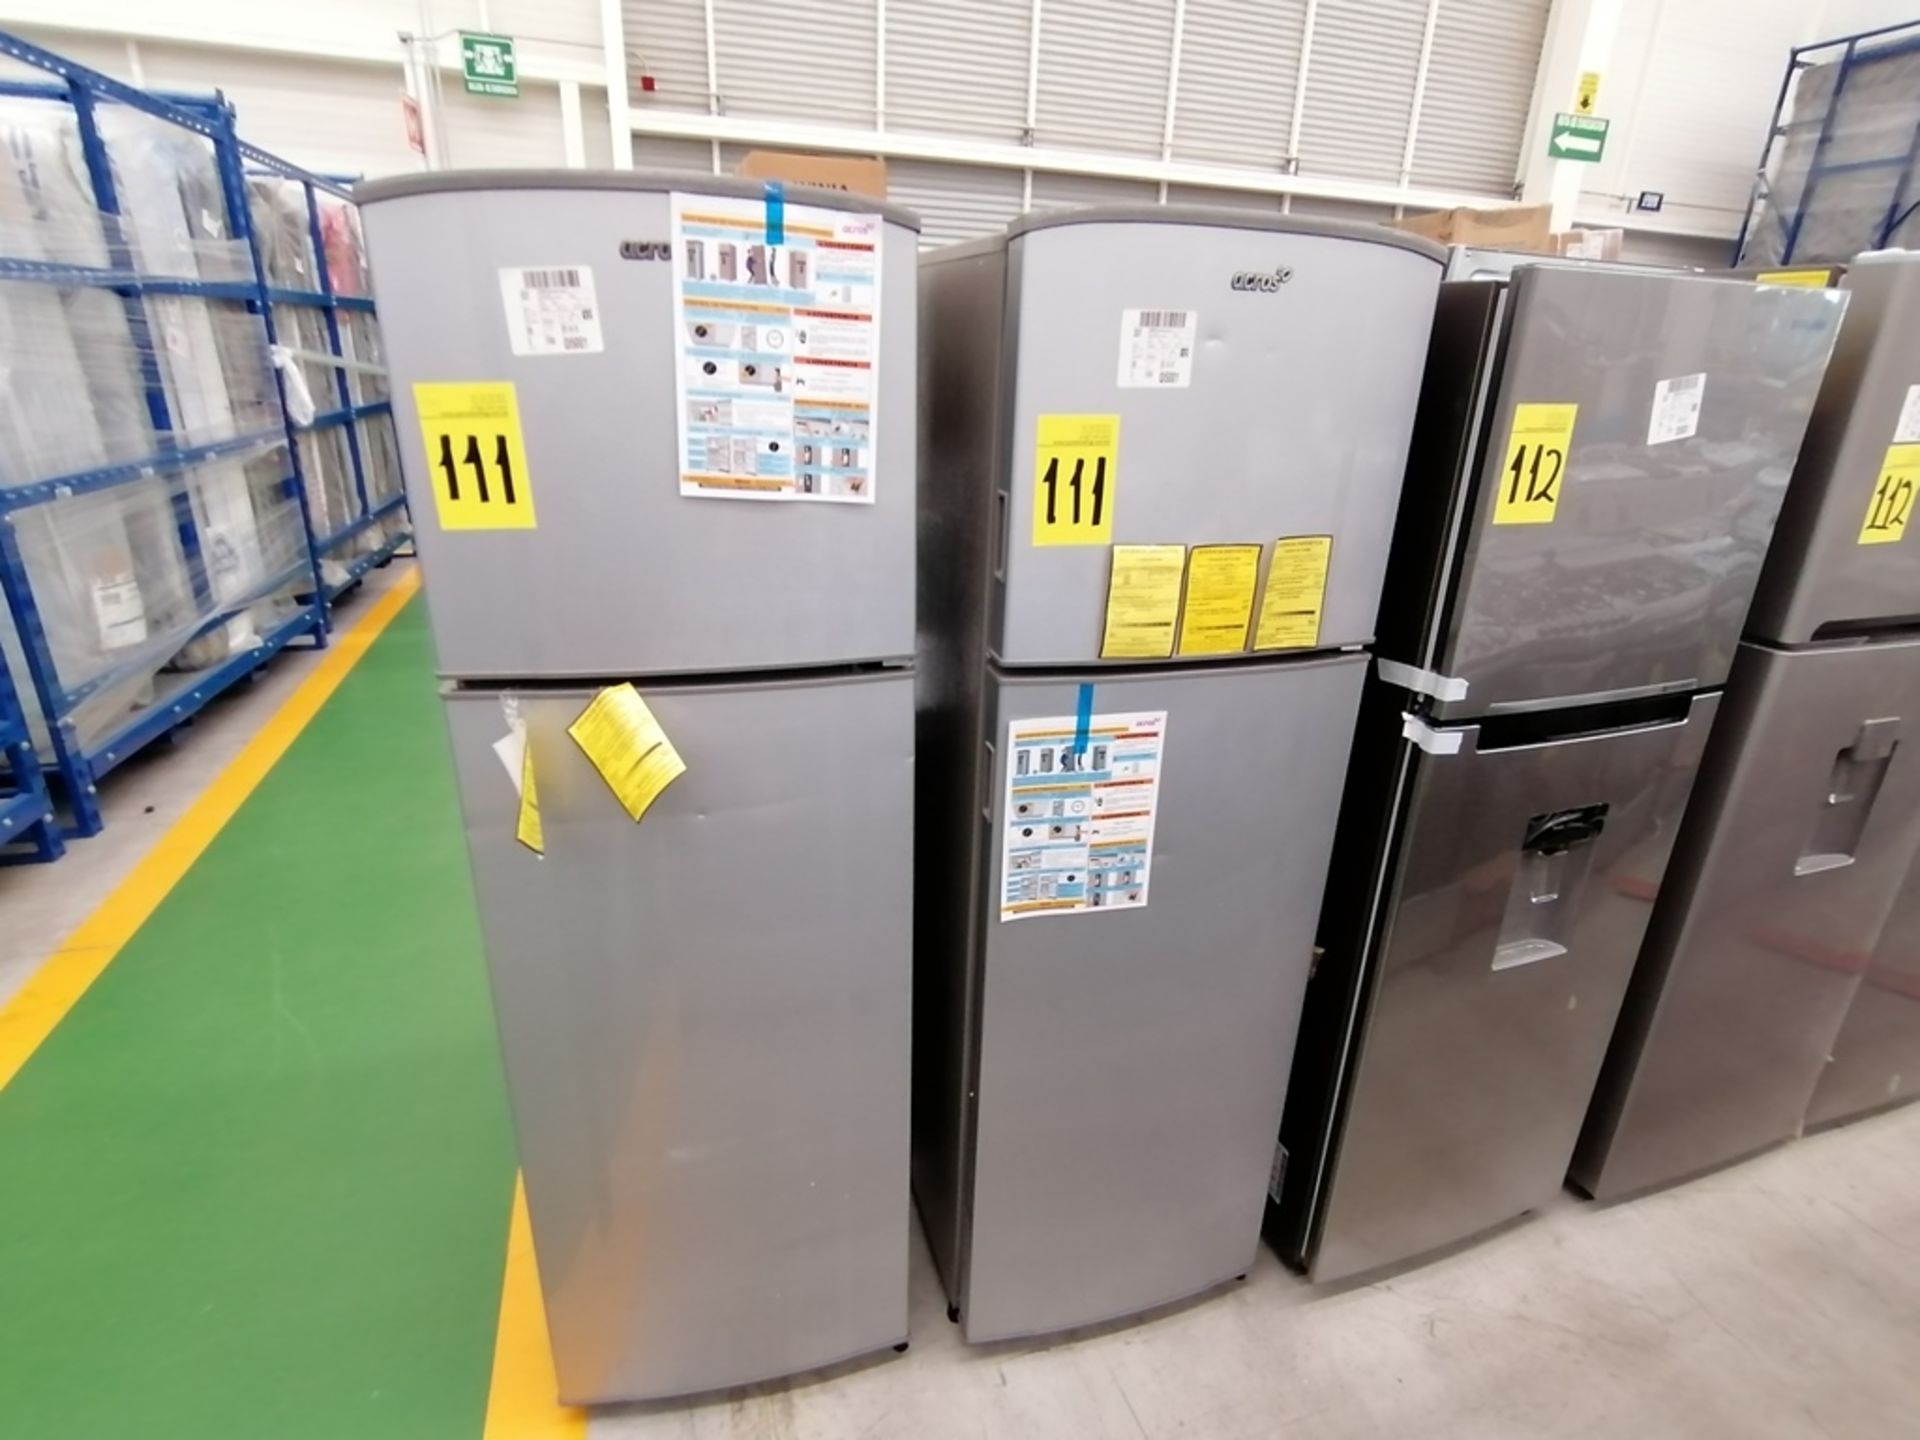 Lote de 2 refrigeradores incluye: 1 Refrigerador, Marca Acros, Modelo AT9007G, Serie VRA4332547, Co - Image 3 of 14